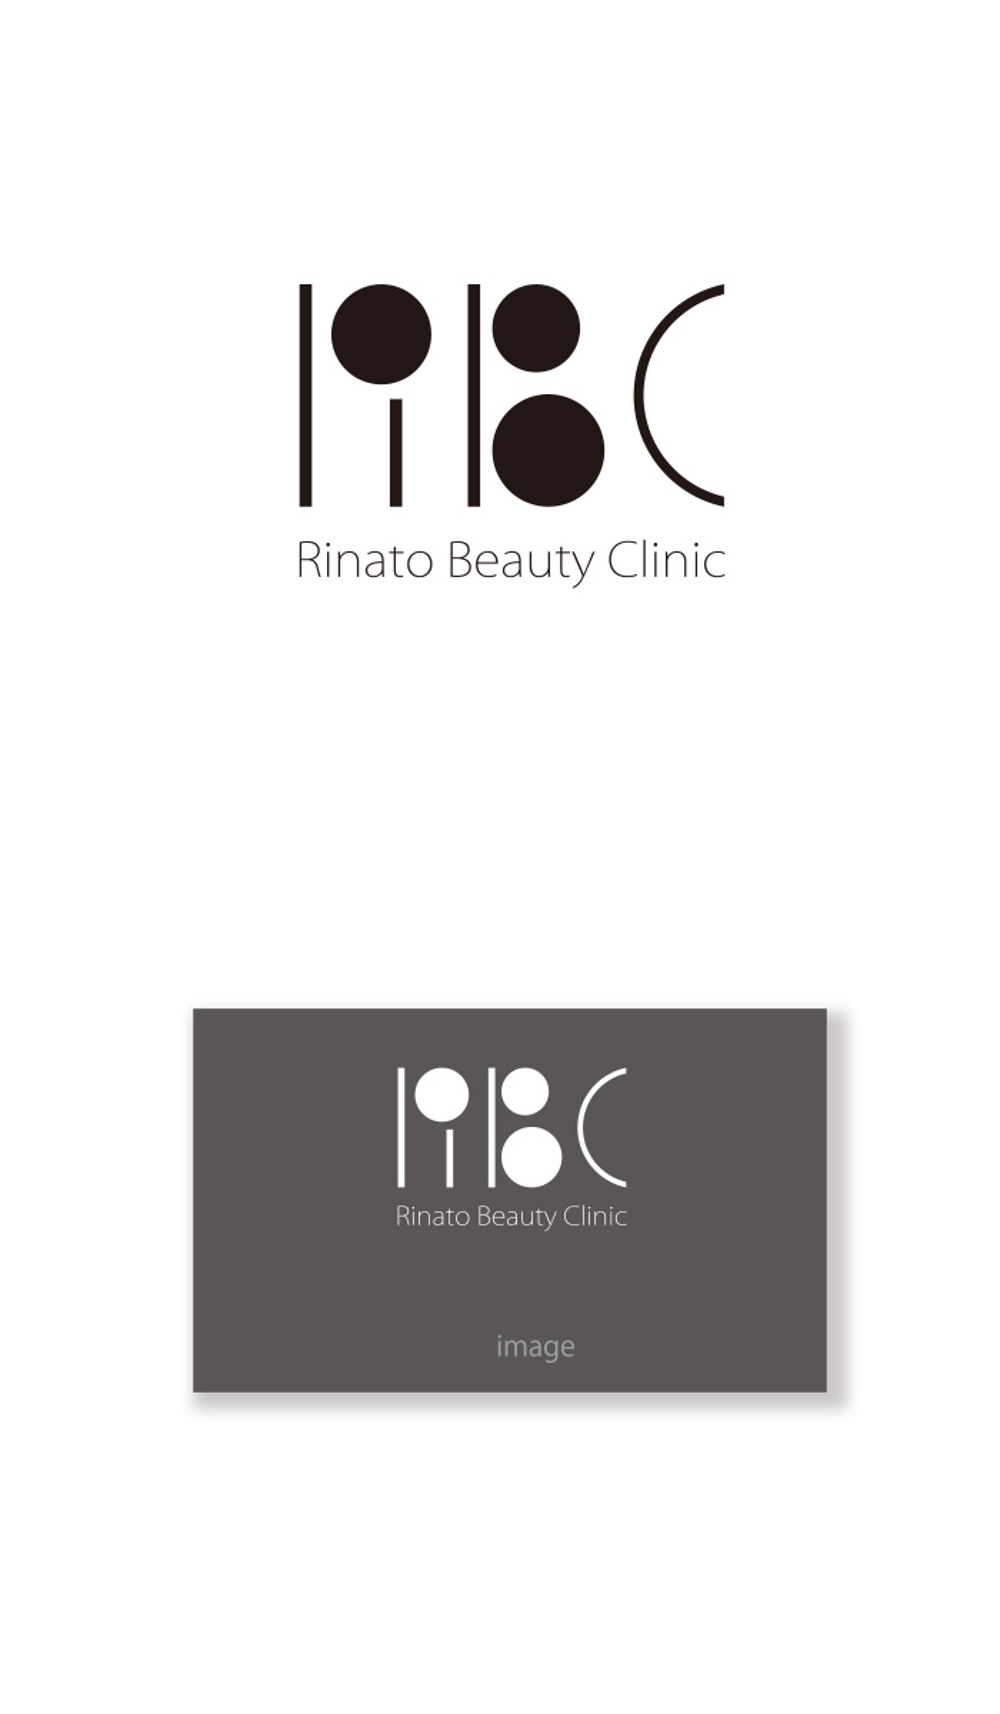 Rinato Beauty Clinic logo_serve.jpg